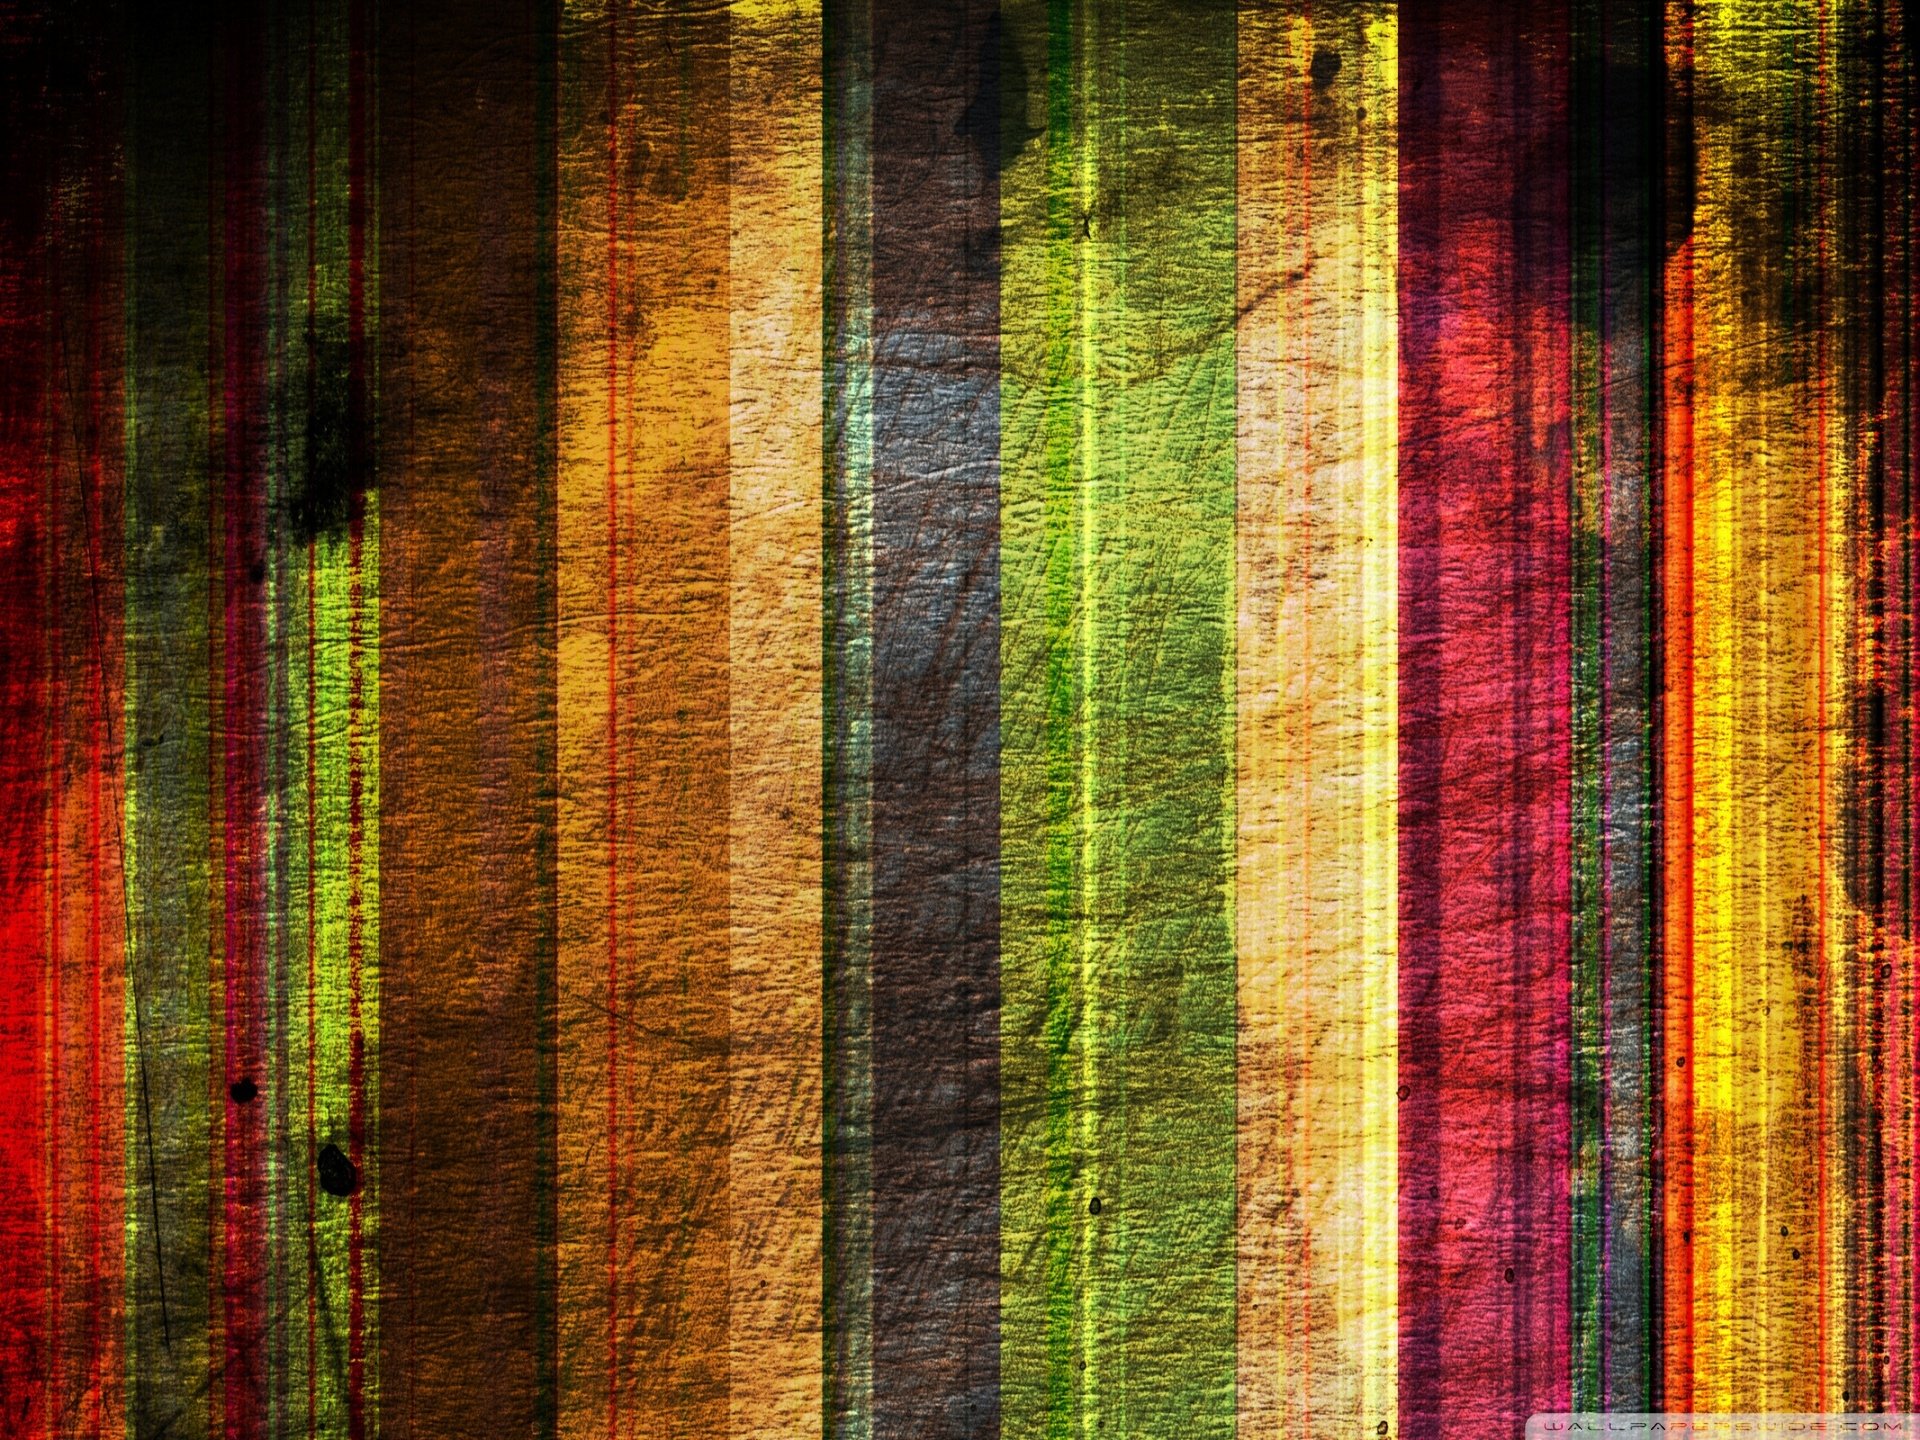 Hd Wallpaper - Striped Wallpaper Hd , HD Wallpaper & Backgrounds